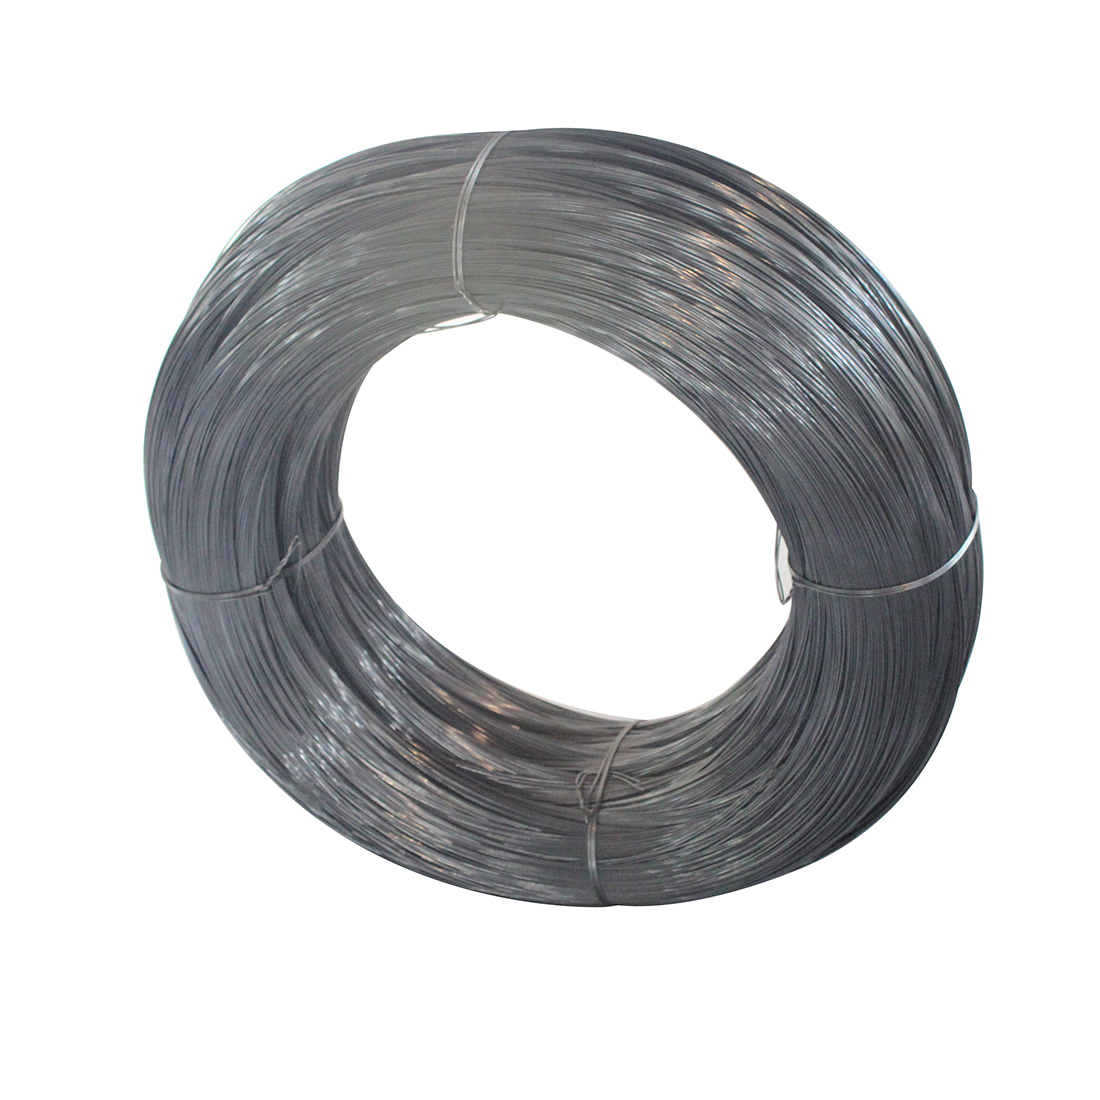 40 # Medium carbon steel wire